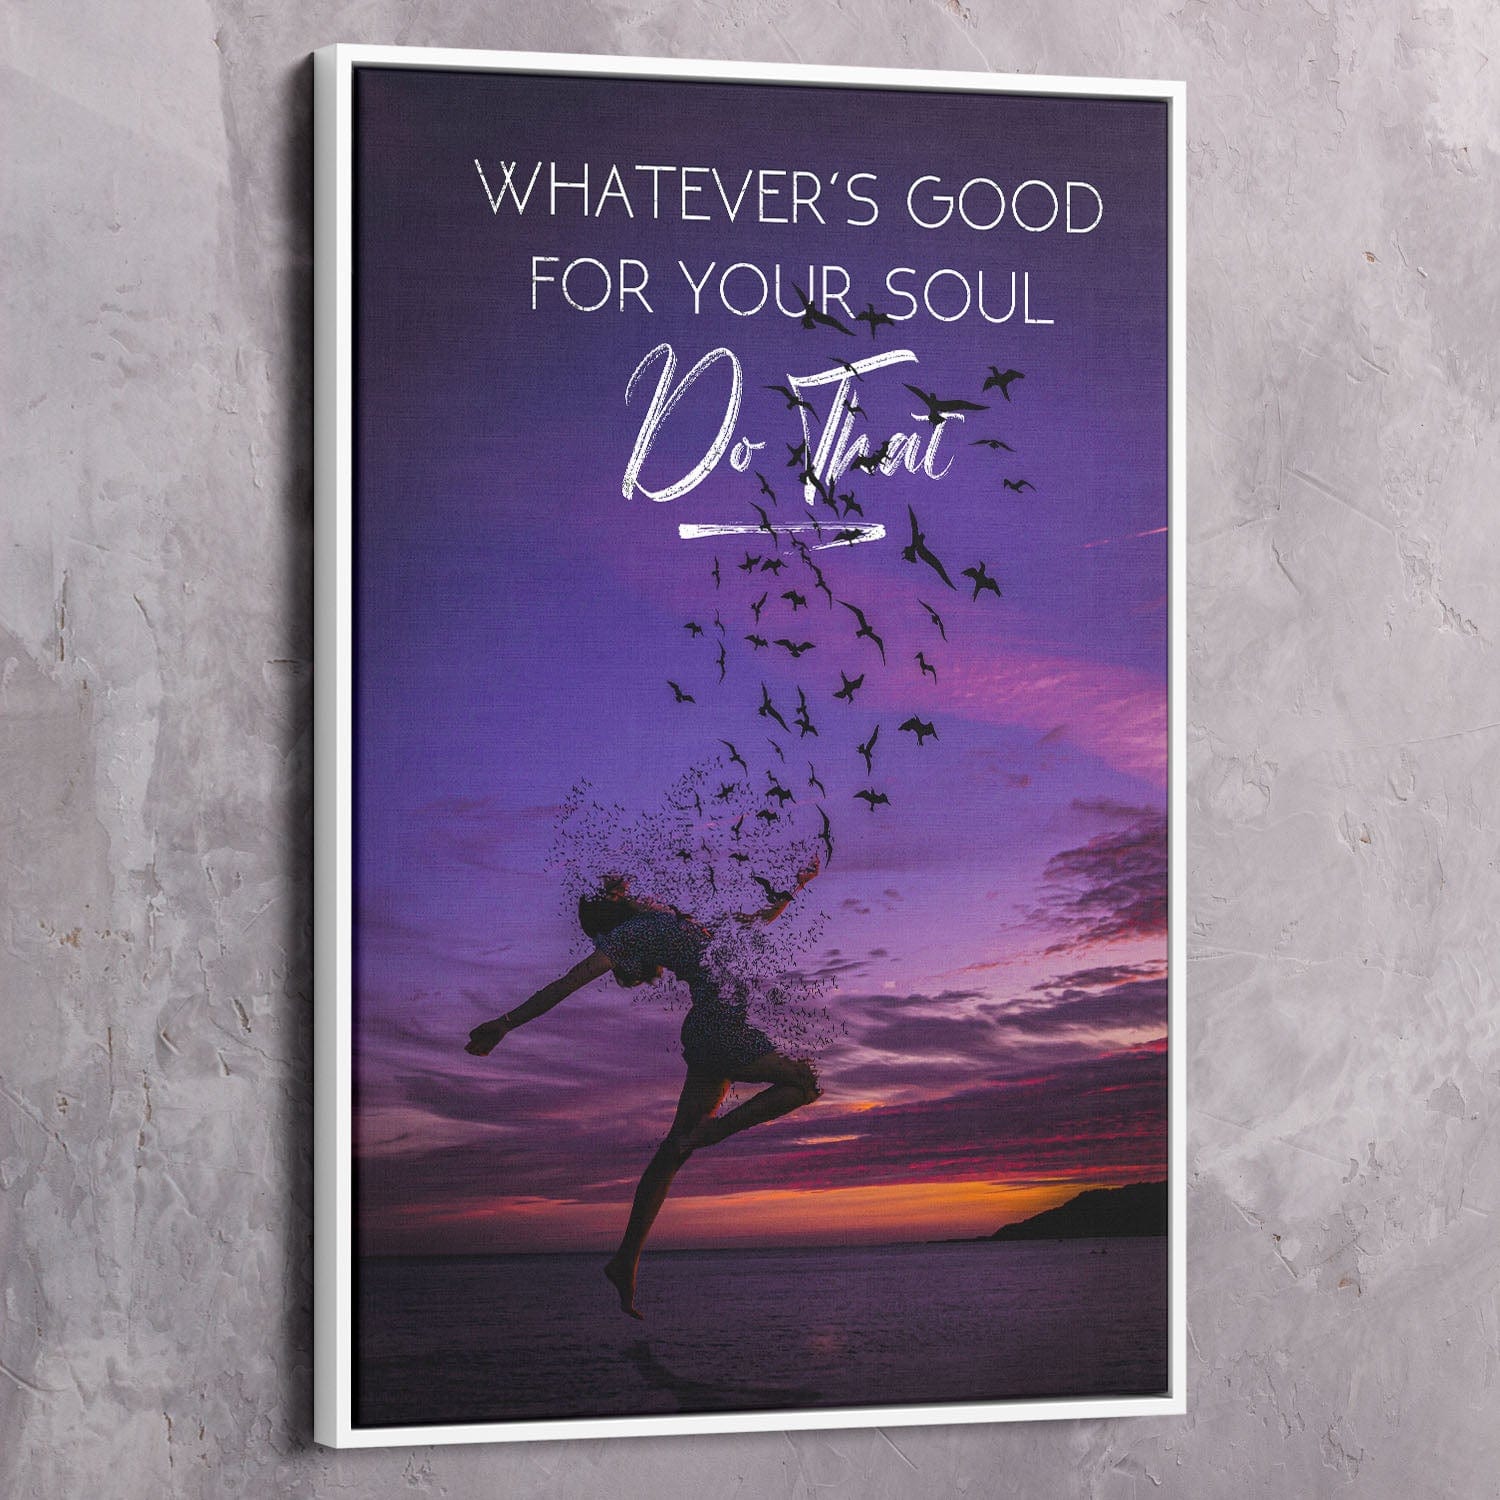 Whatever's Good for Your Soul Wall Art | Inspirational Wall Art Motivational Wall Art Quotes Office Art | ImpaktMaker Exclusive Canvas Art Portrait